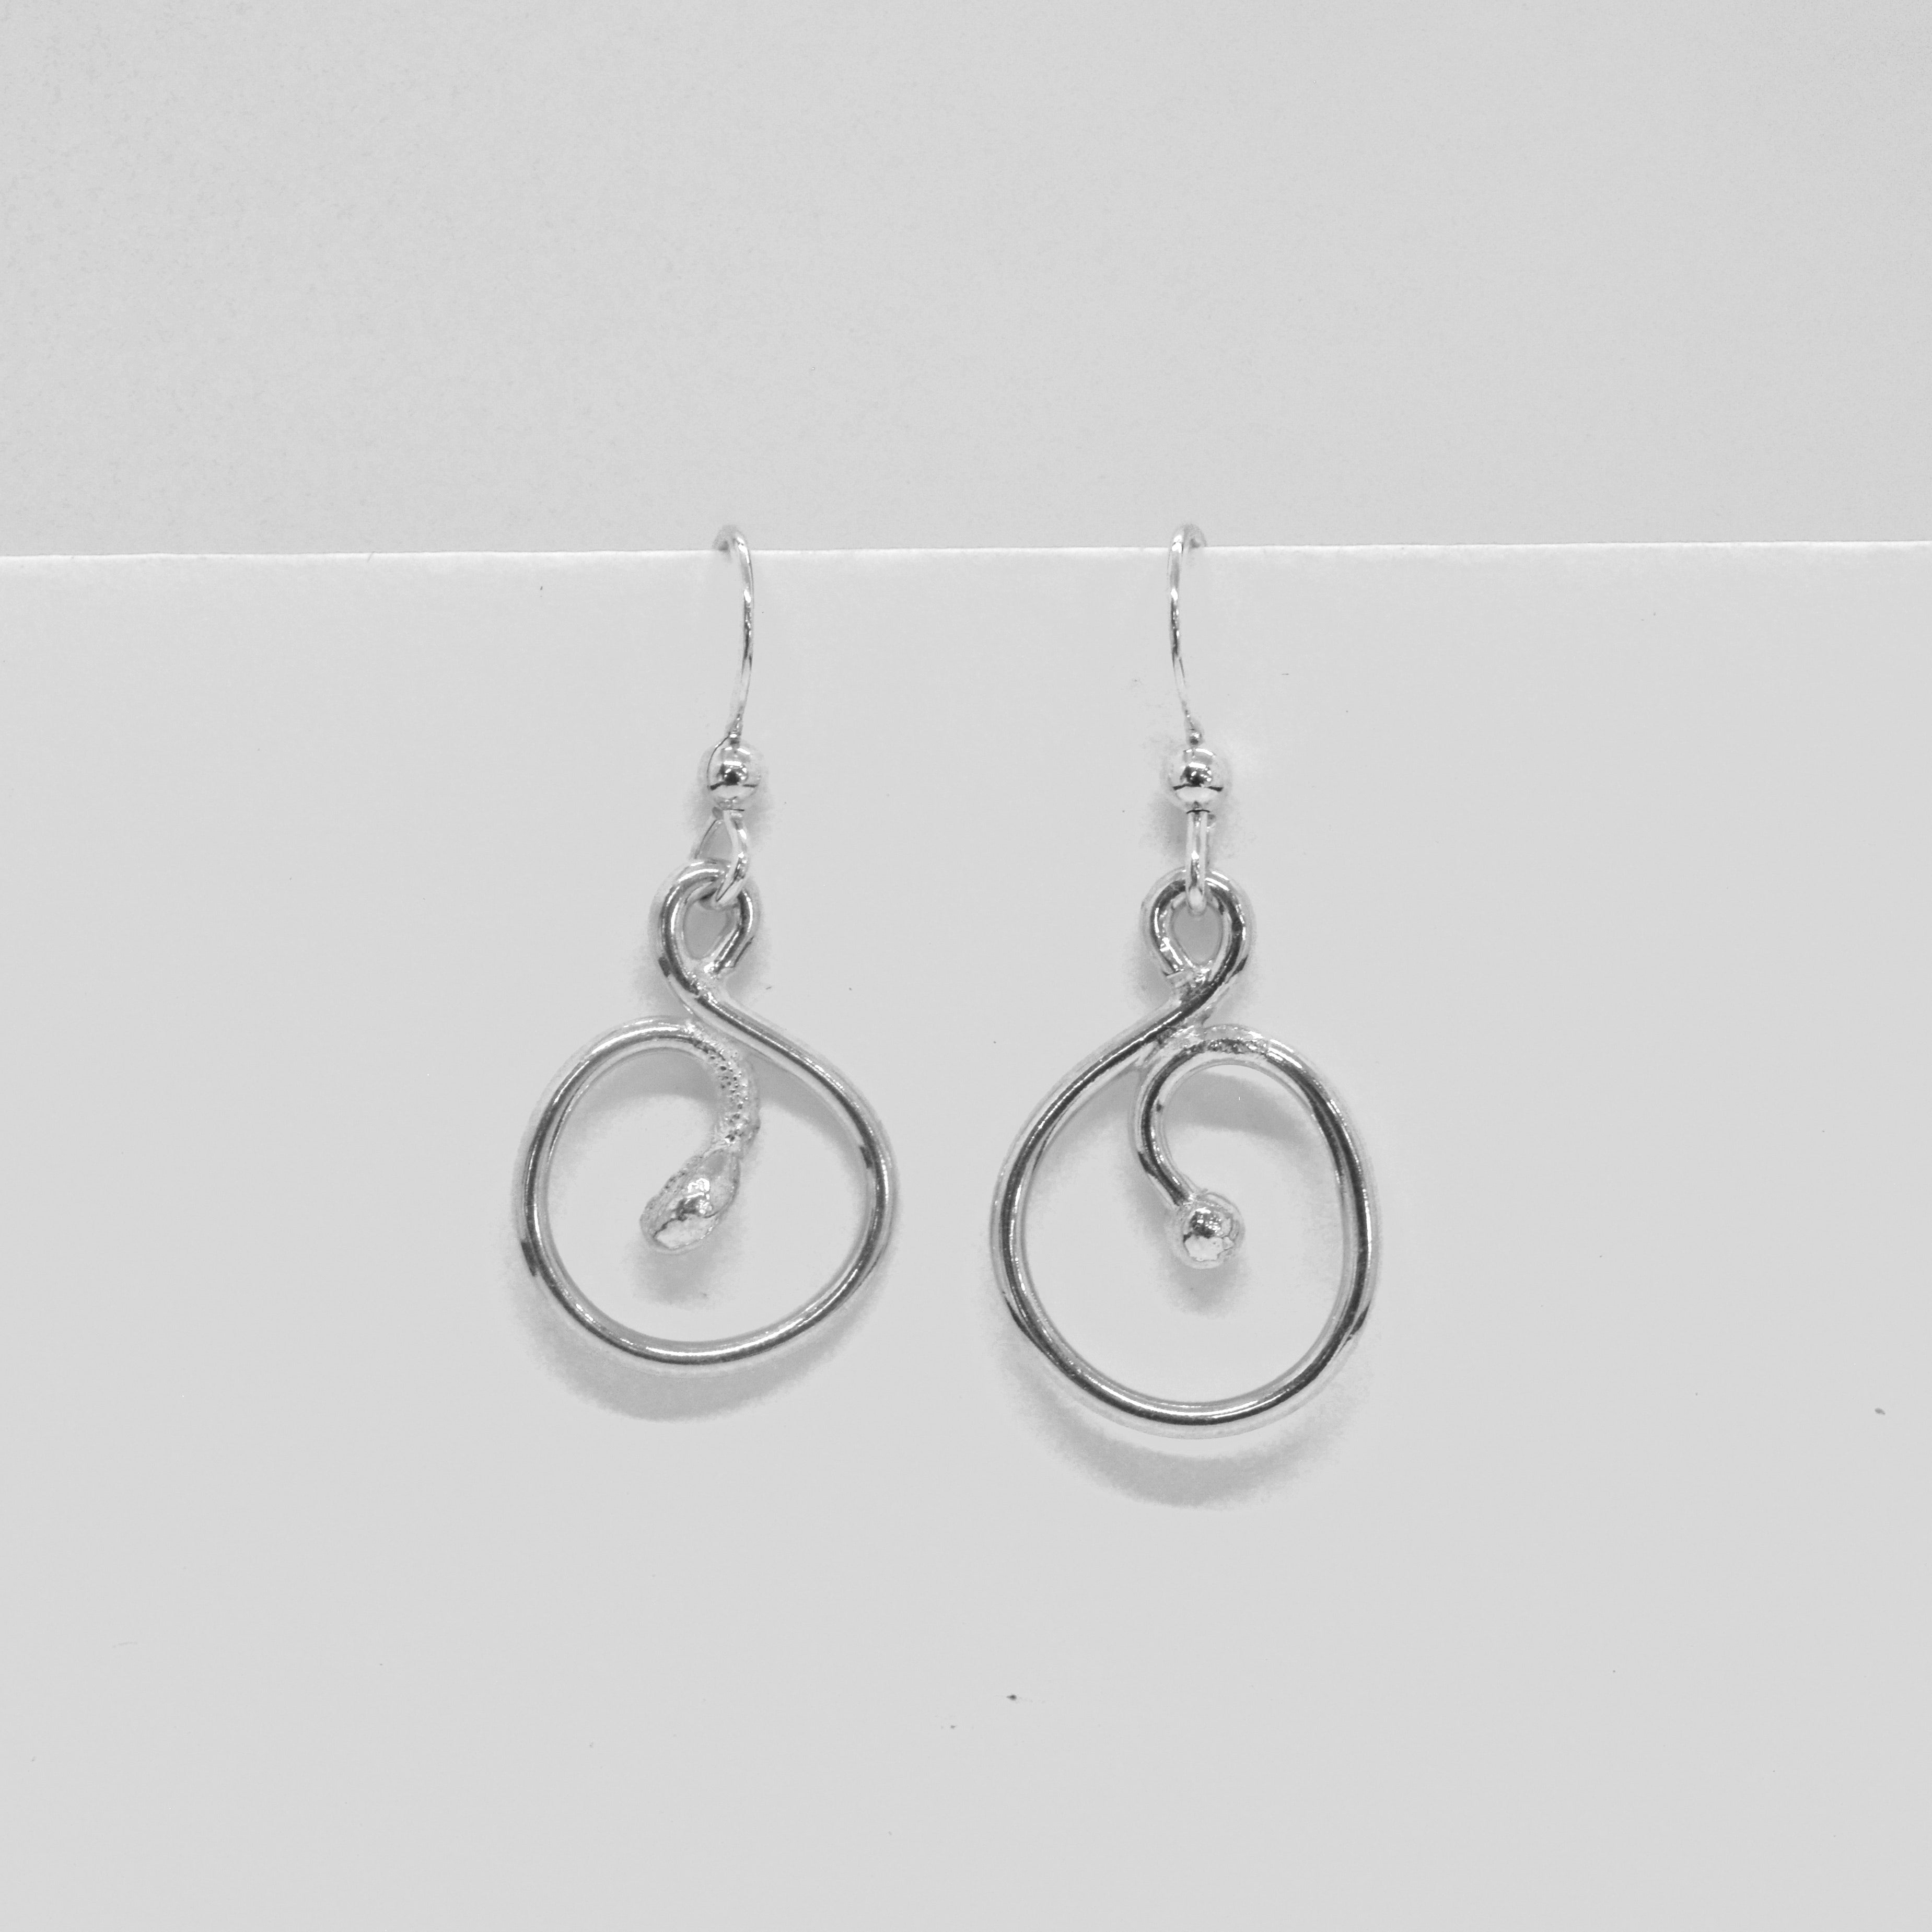 Fine silver swirl earrings